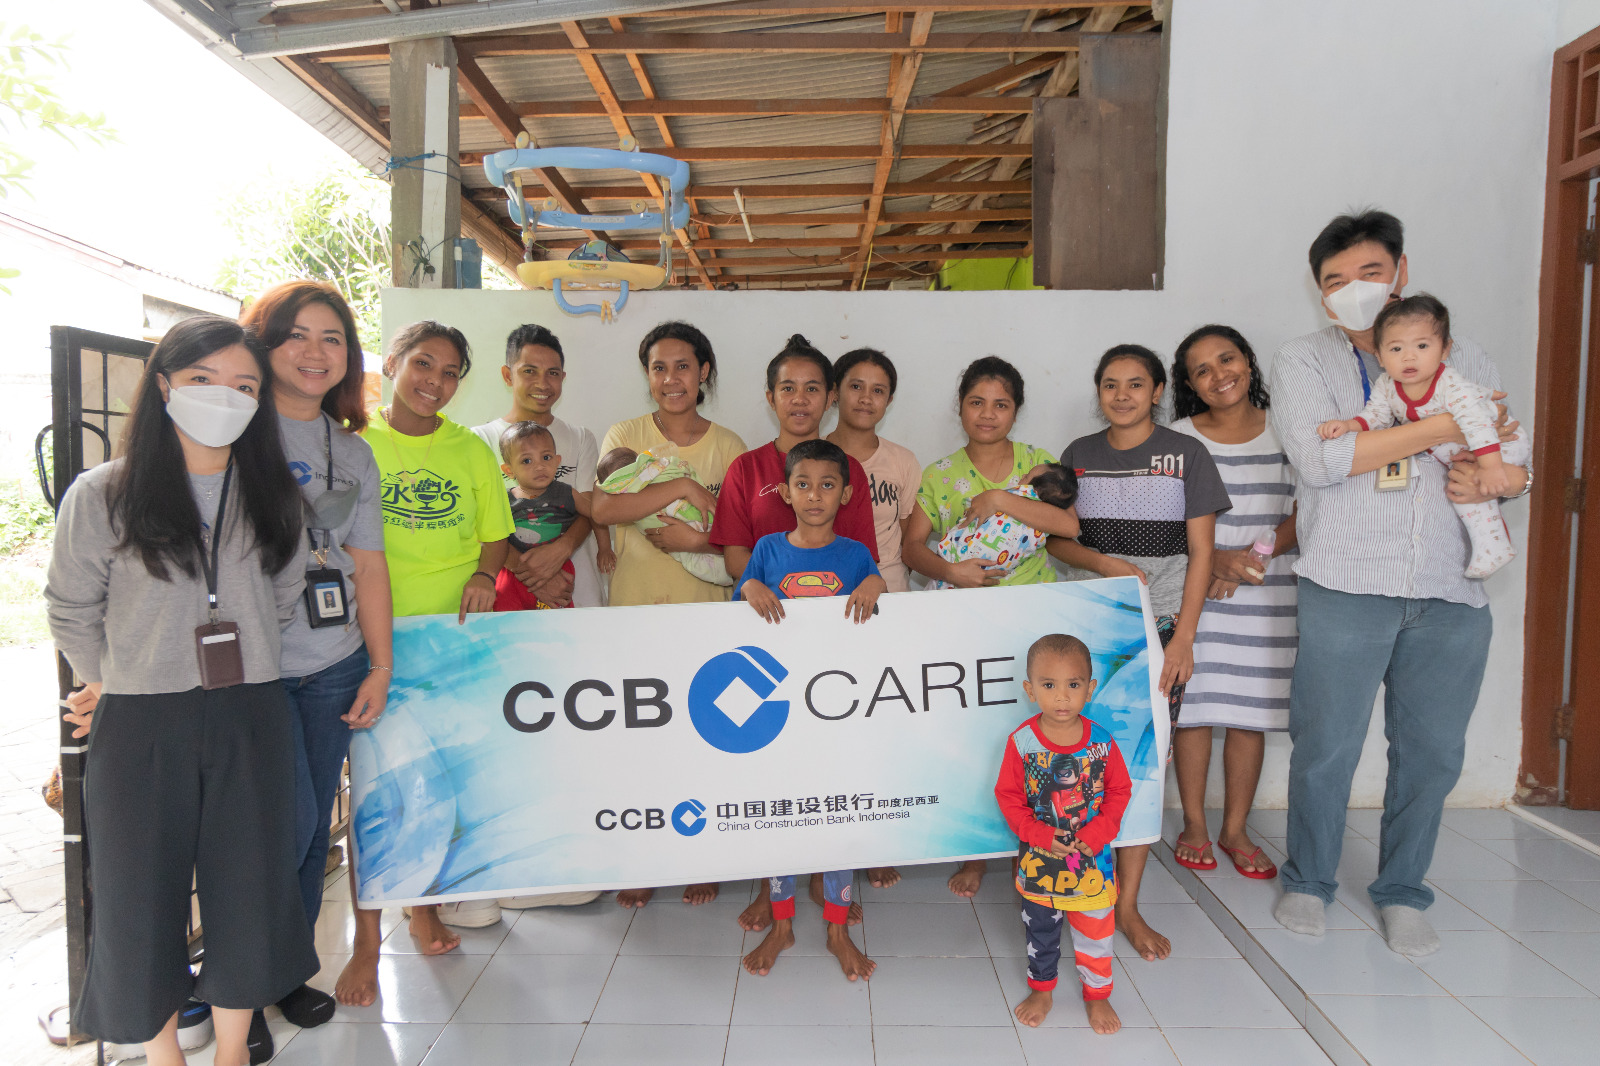 CCBI Care - Panti Asuhan Tangan Kasih, Tangerang